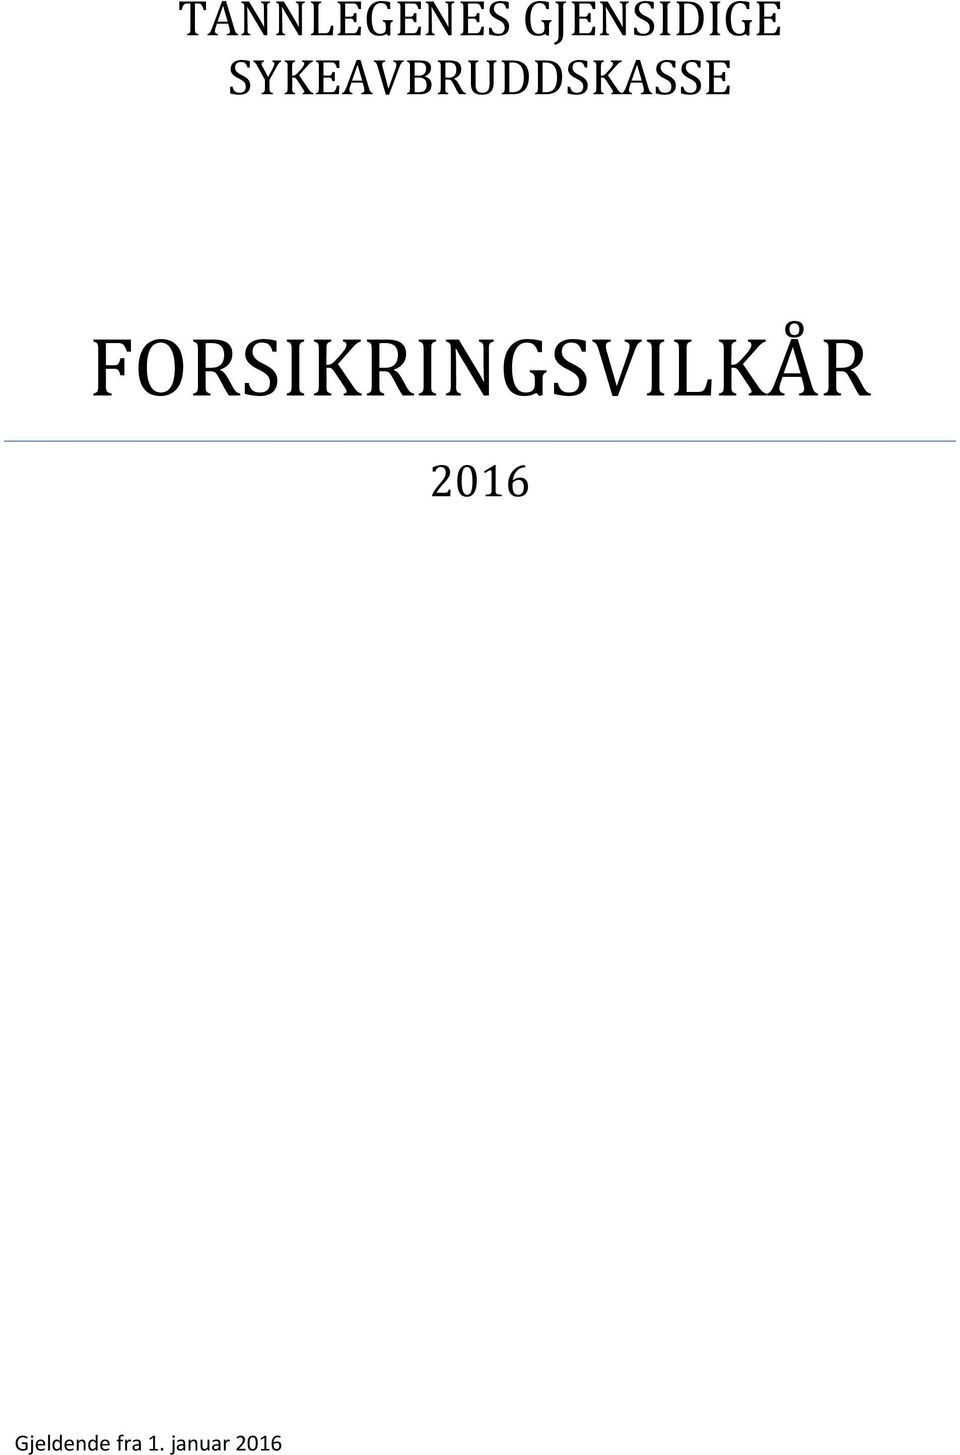 FORSIKRINGSVILKÅR 2016